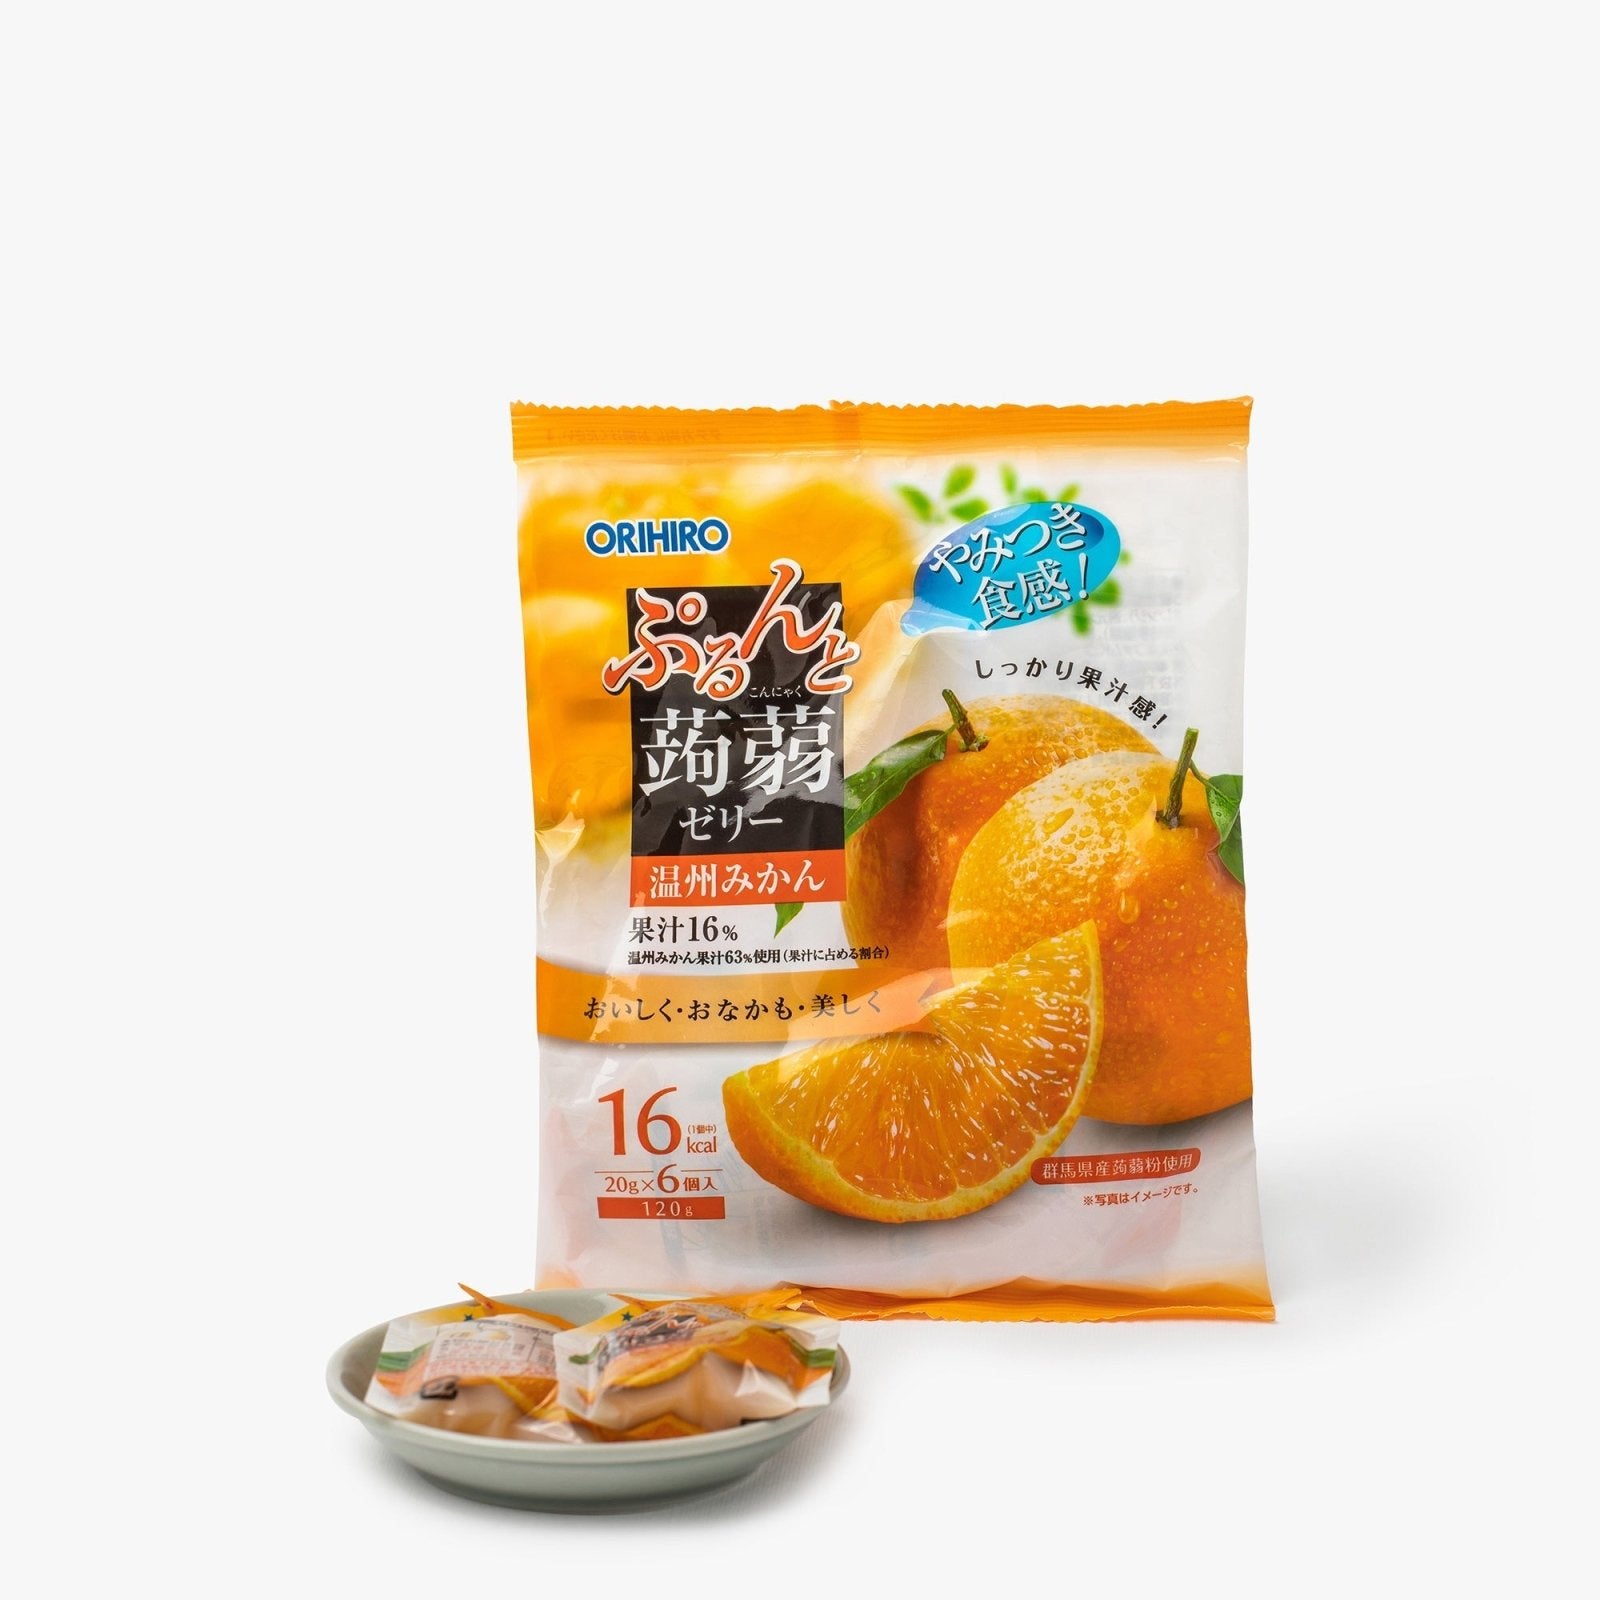 Gelées de konjac à la mandarine - 120g - Orihiro - iRASSHAi